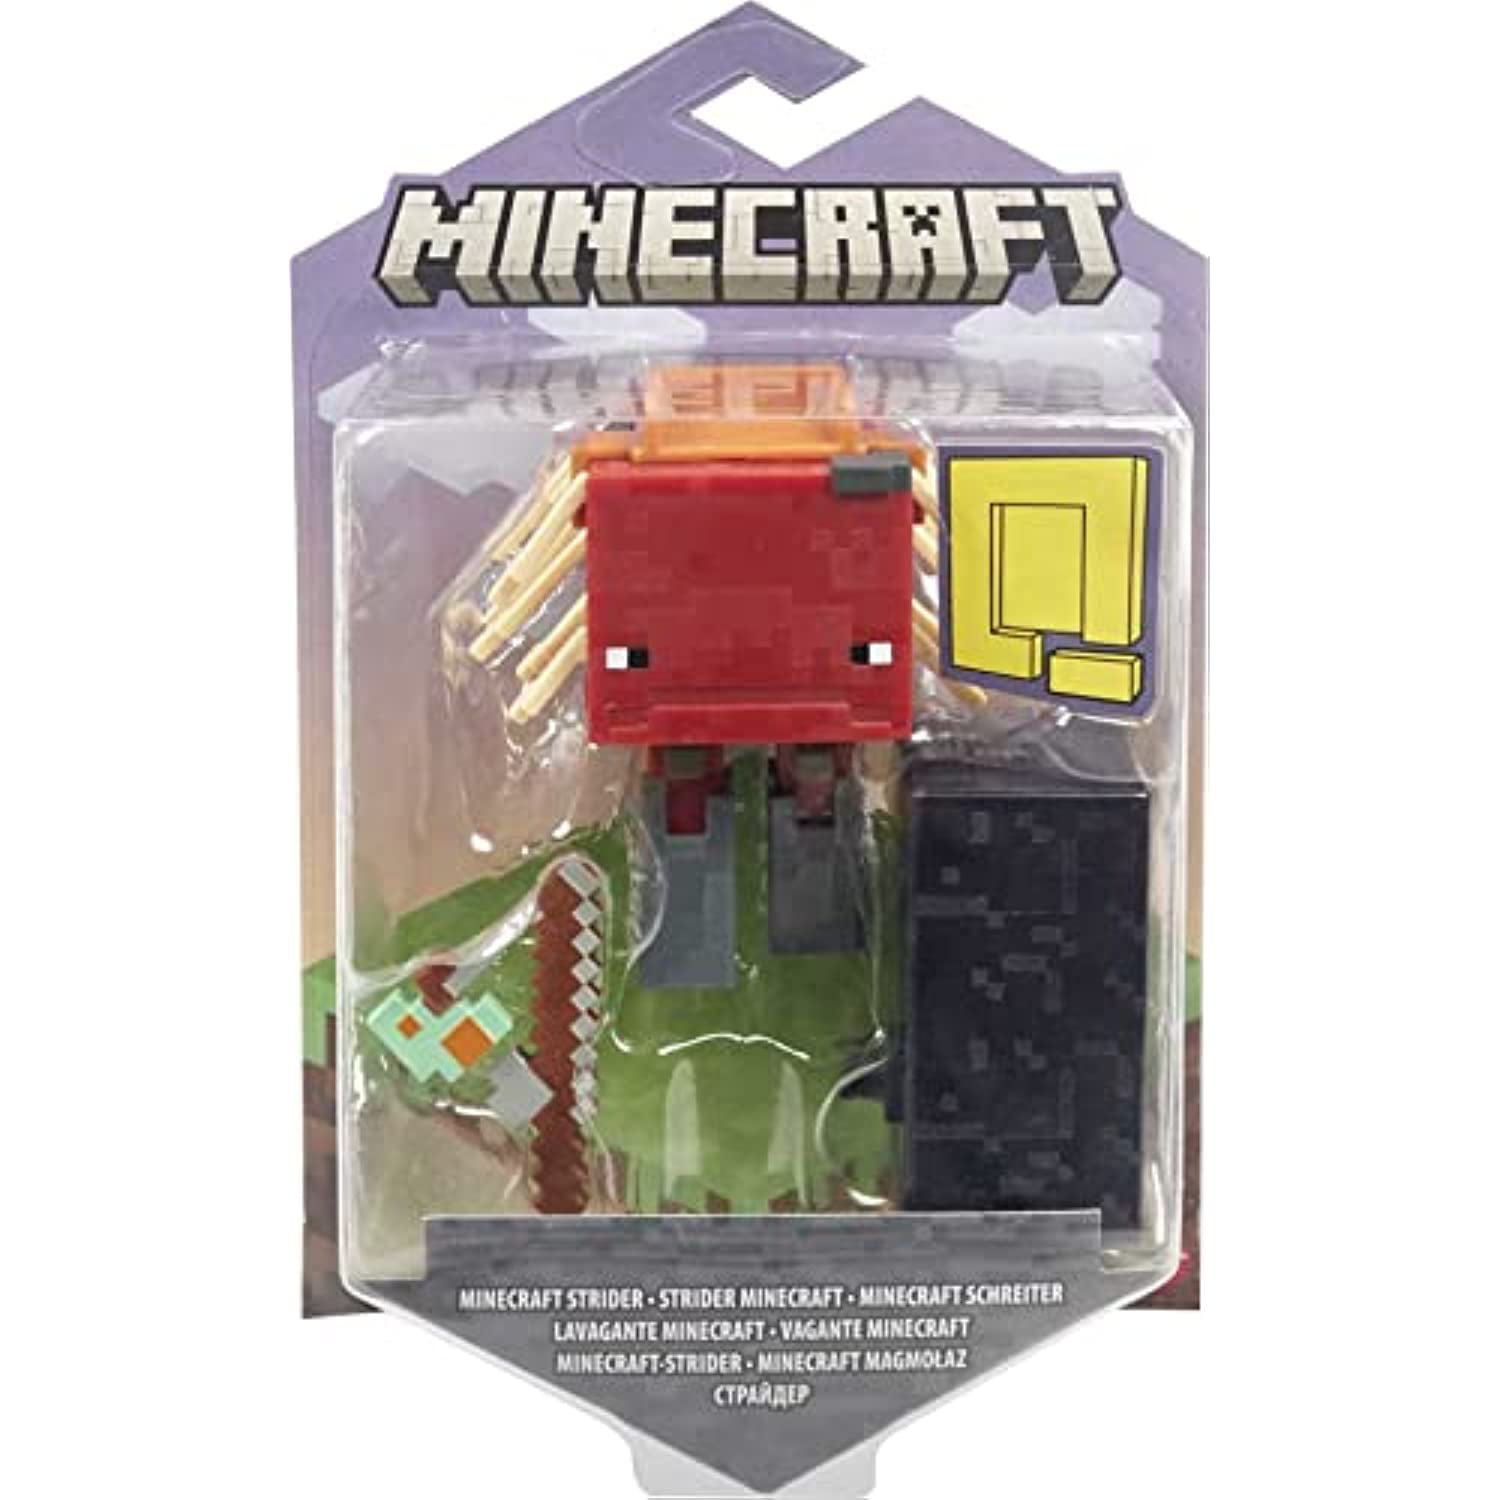 Minecraft Strider Plush, Minecraft Plush, Gamer Gift, Stuffed